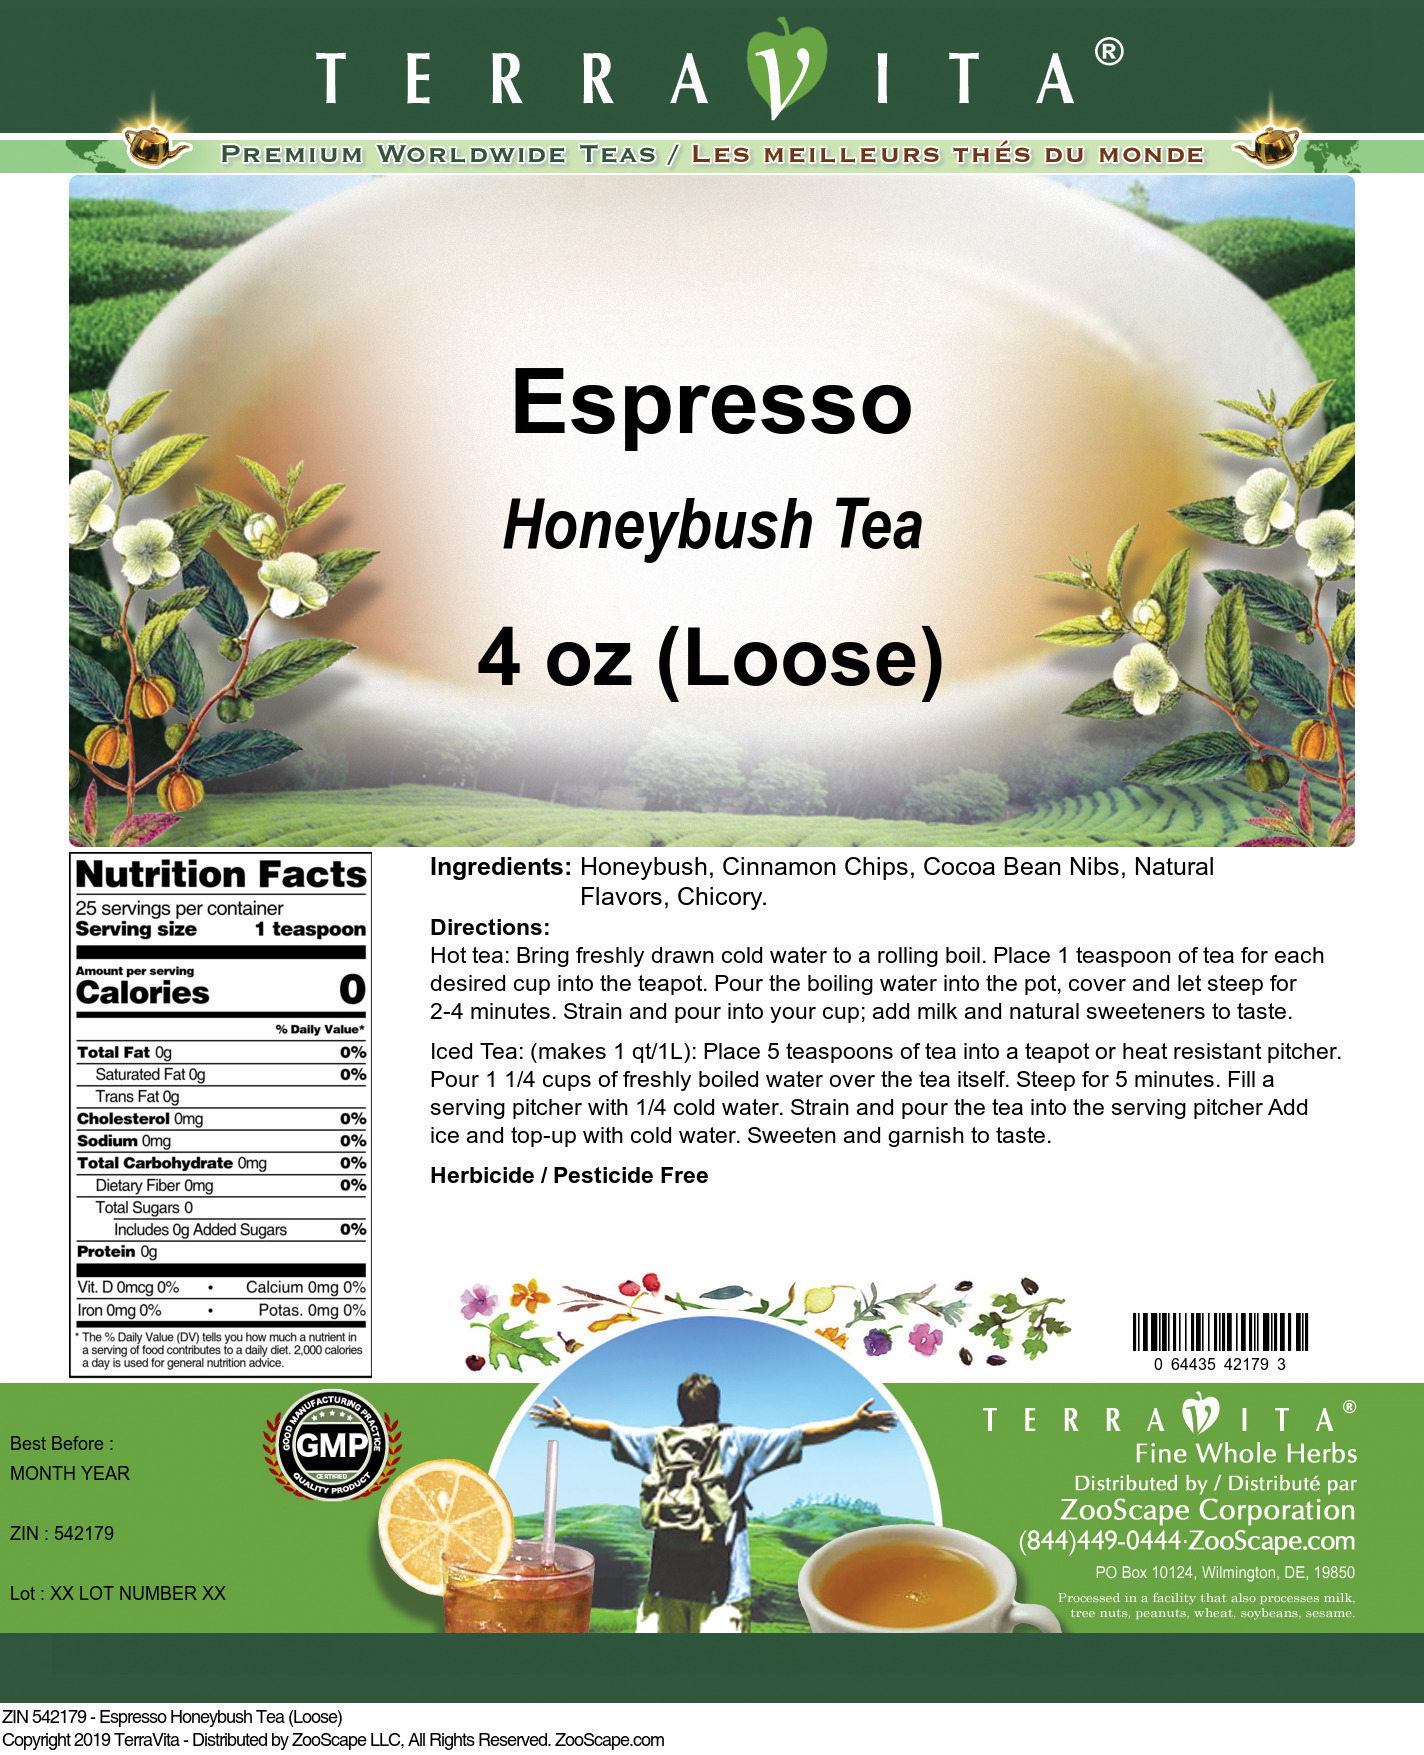 Espresso Honeybush Tea (Loose) - Label